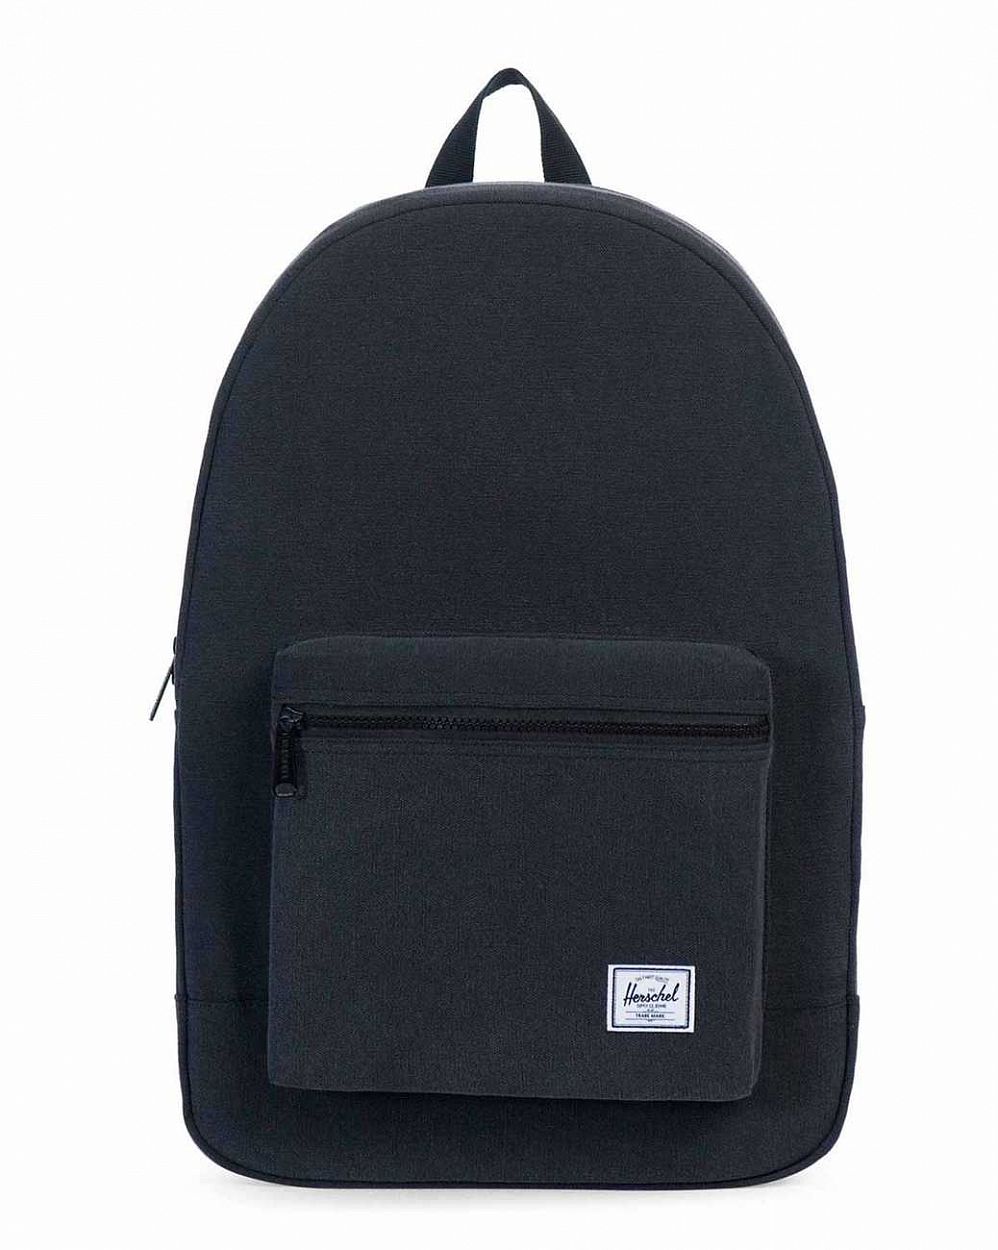 Рюкзак тканевый из толстого хлопка Herschel Packable Daypack Black отзывы